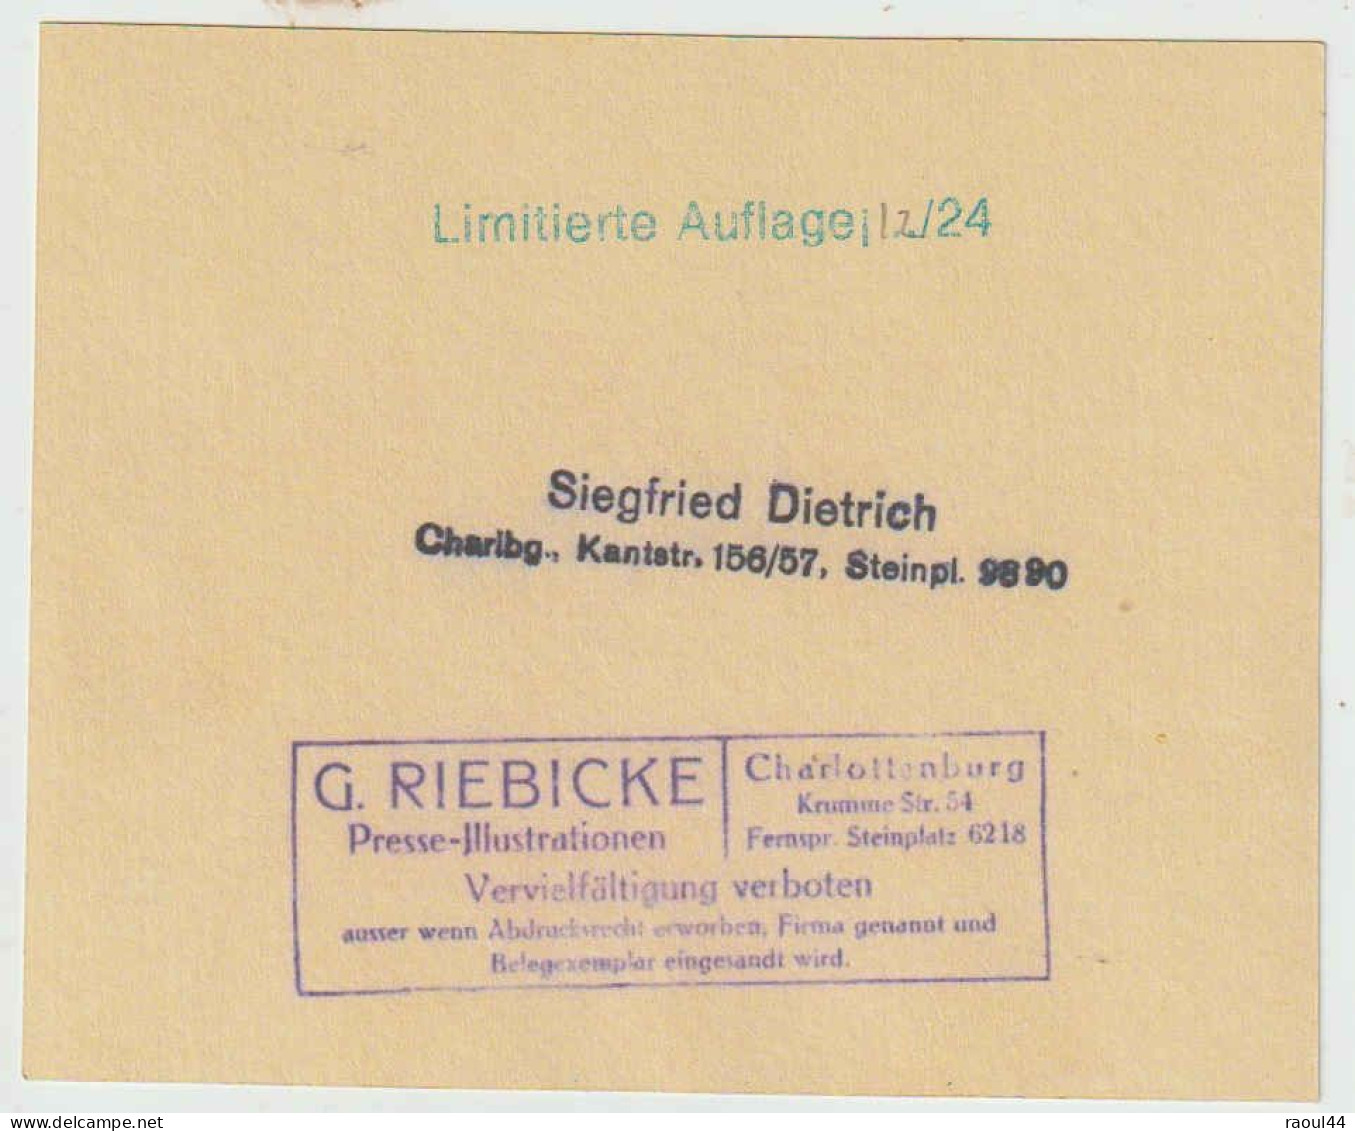 Album photo's George Riebicke 'Dein ja zum Leibe' 1943